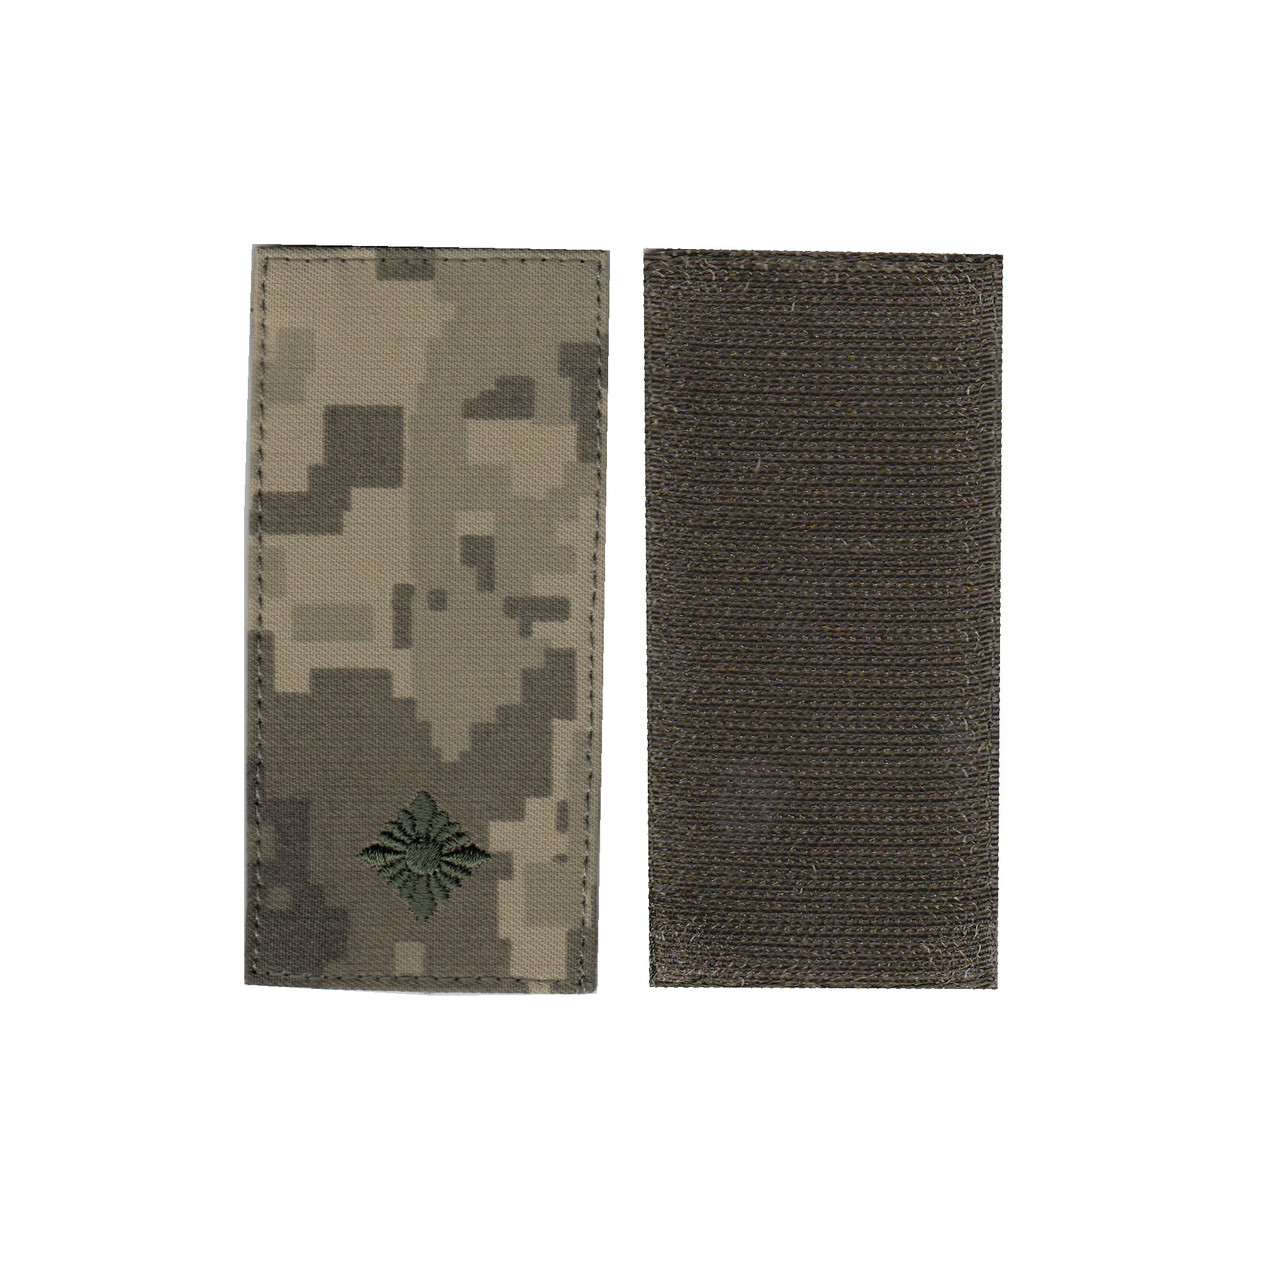 Погон молодший лейтенант військовий / армійський шеврон ЗСУ, чорний колір на пікселі. 10 см * 5 см